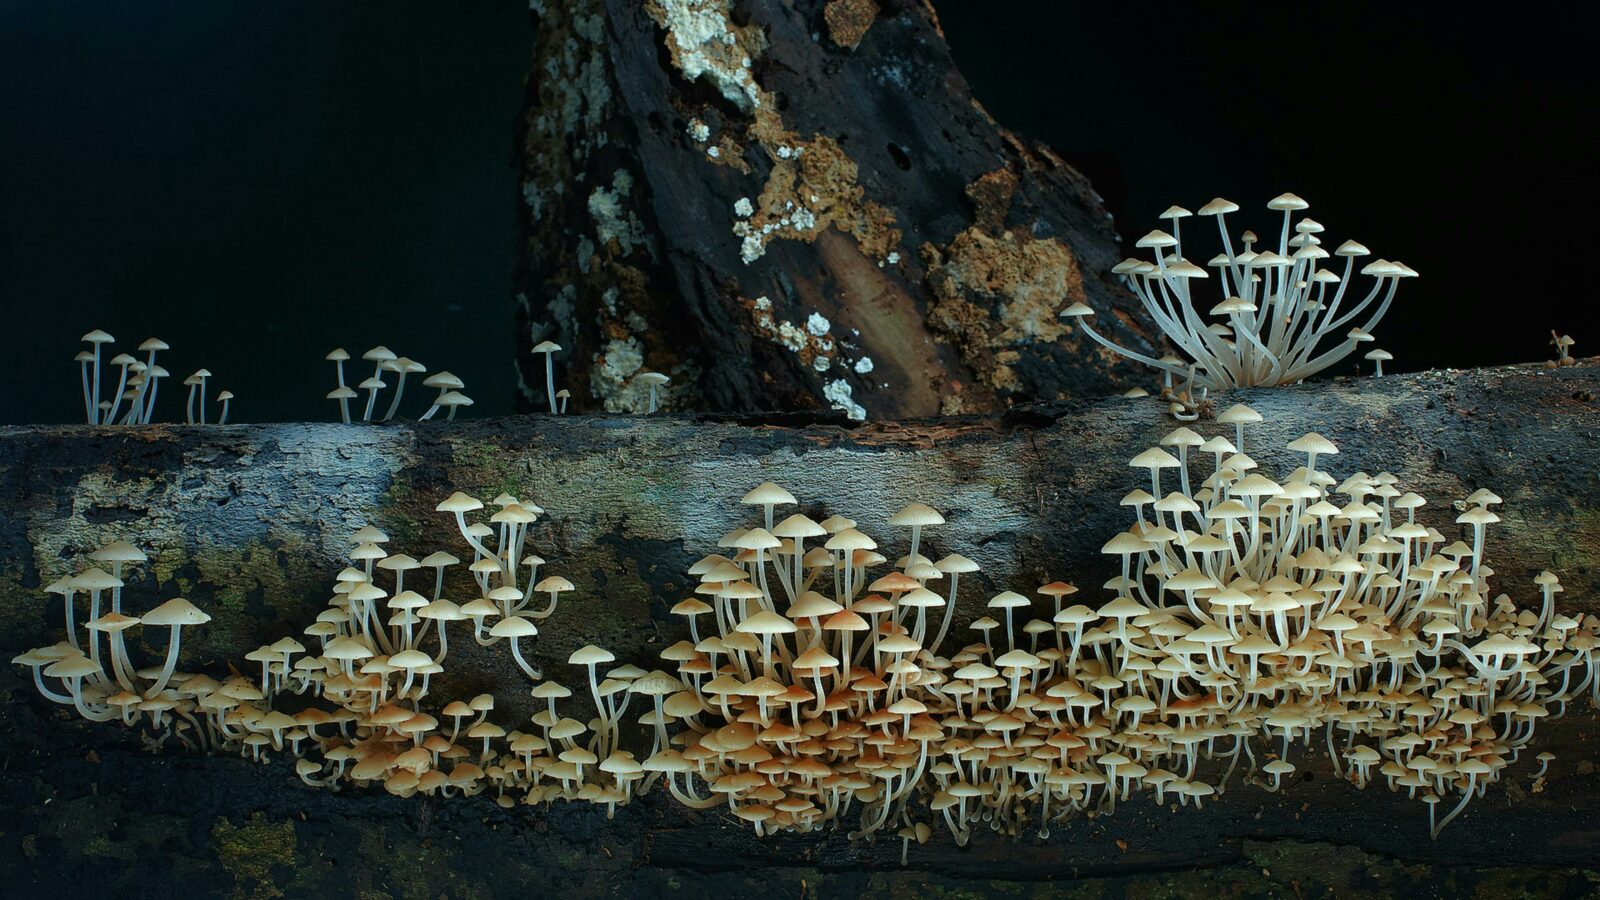 A fungi fairyland